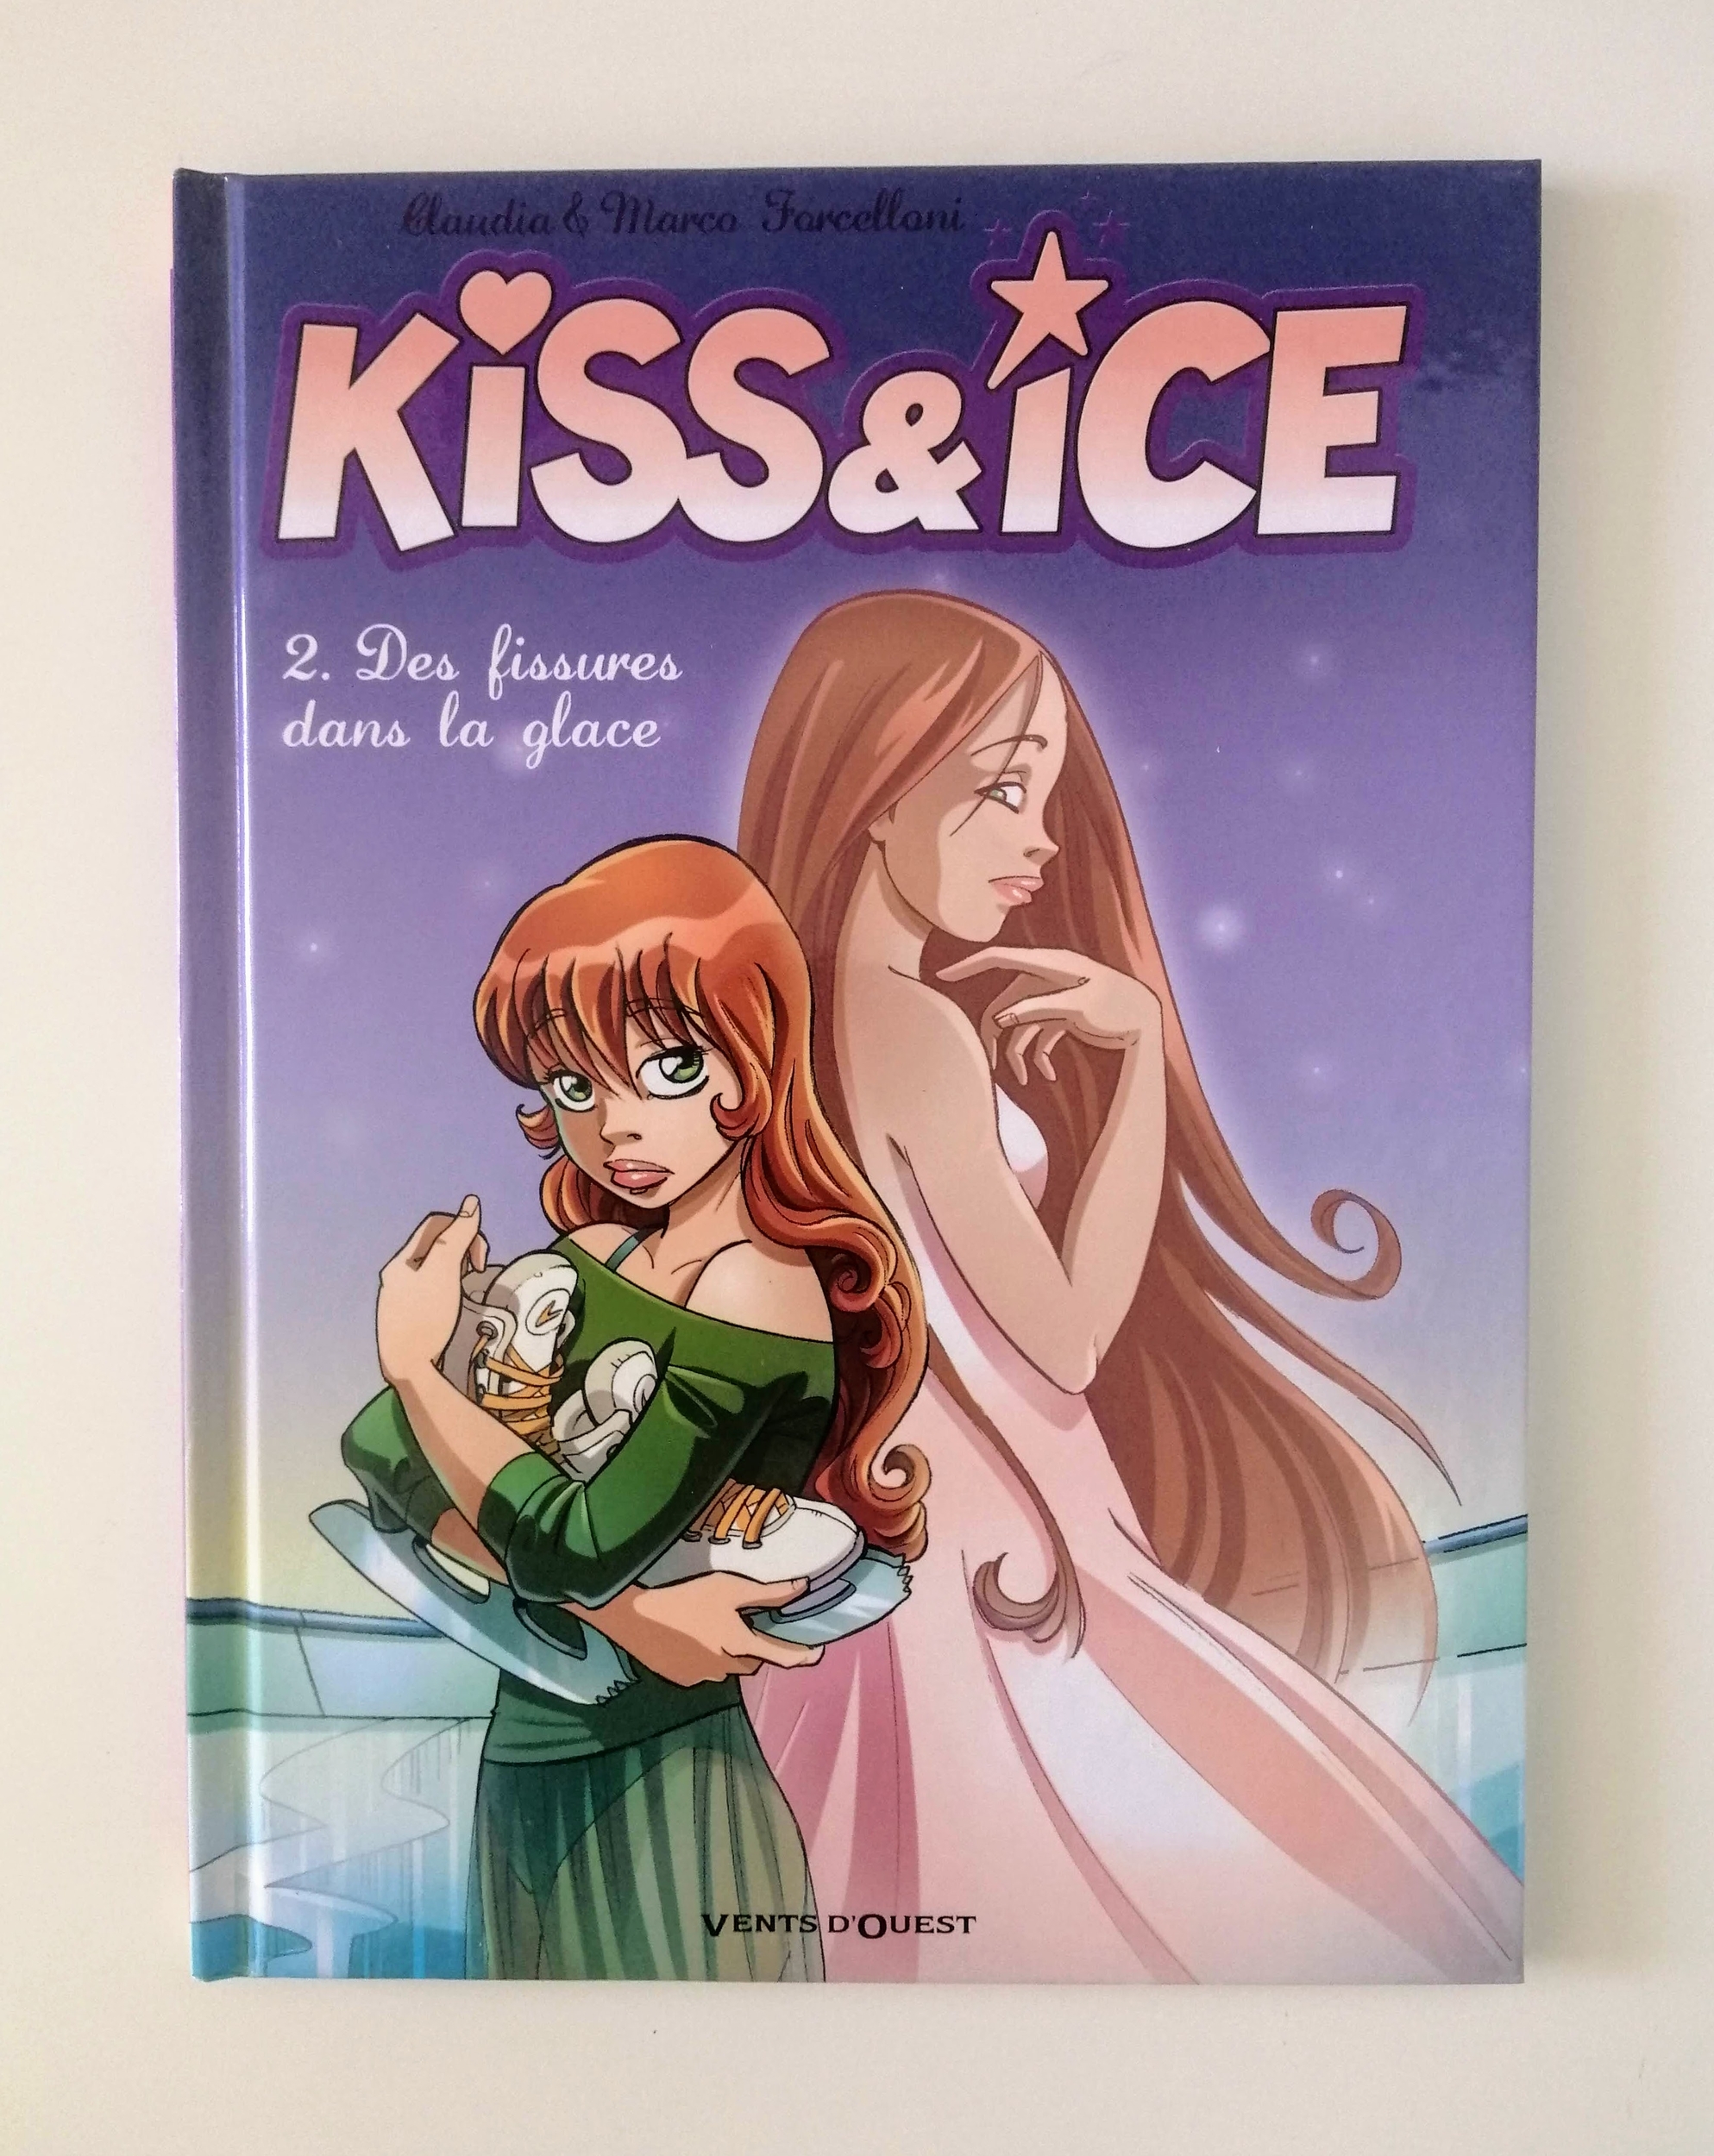 Kiss & Ice - Des fissures dans la glace (Claudia et Marco Forcelloni)